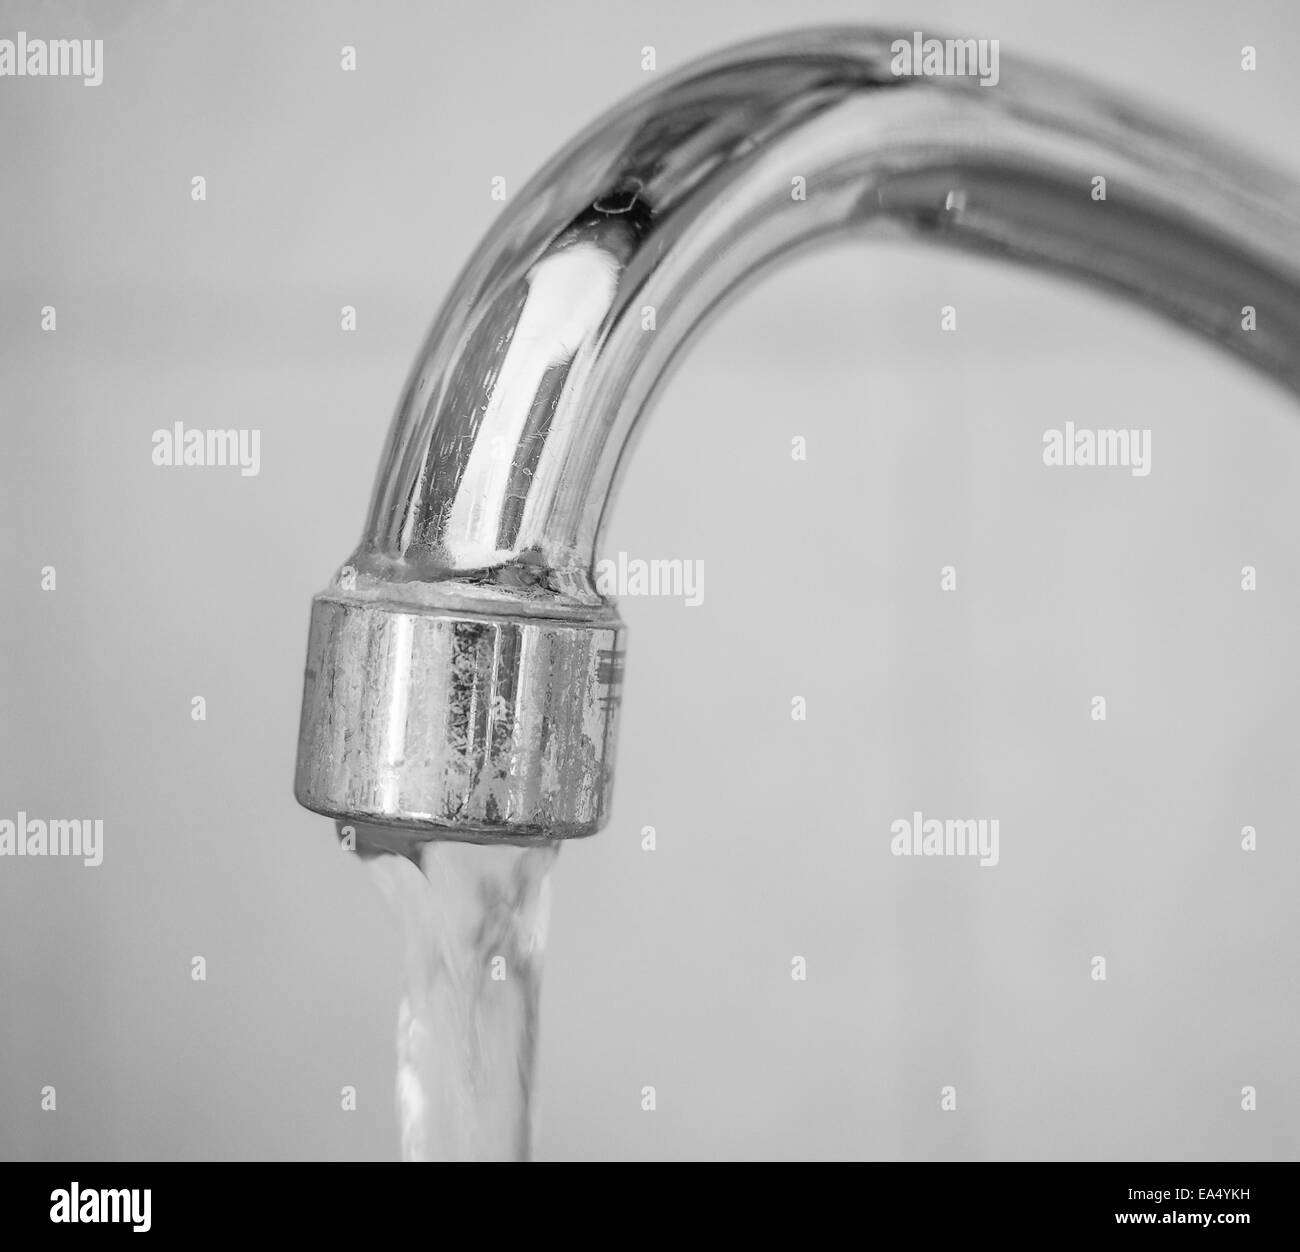 Lavello da cucina rubinetto con acqua corrente Foto Stock